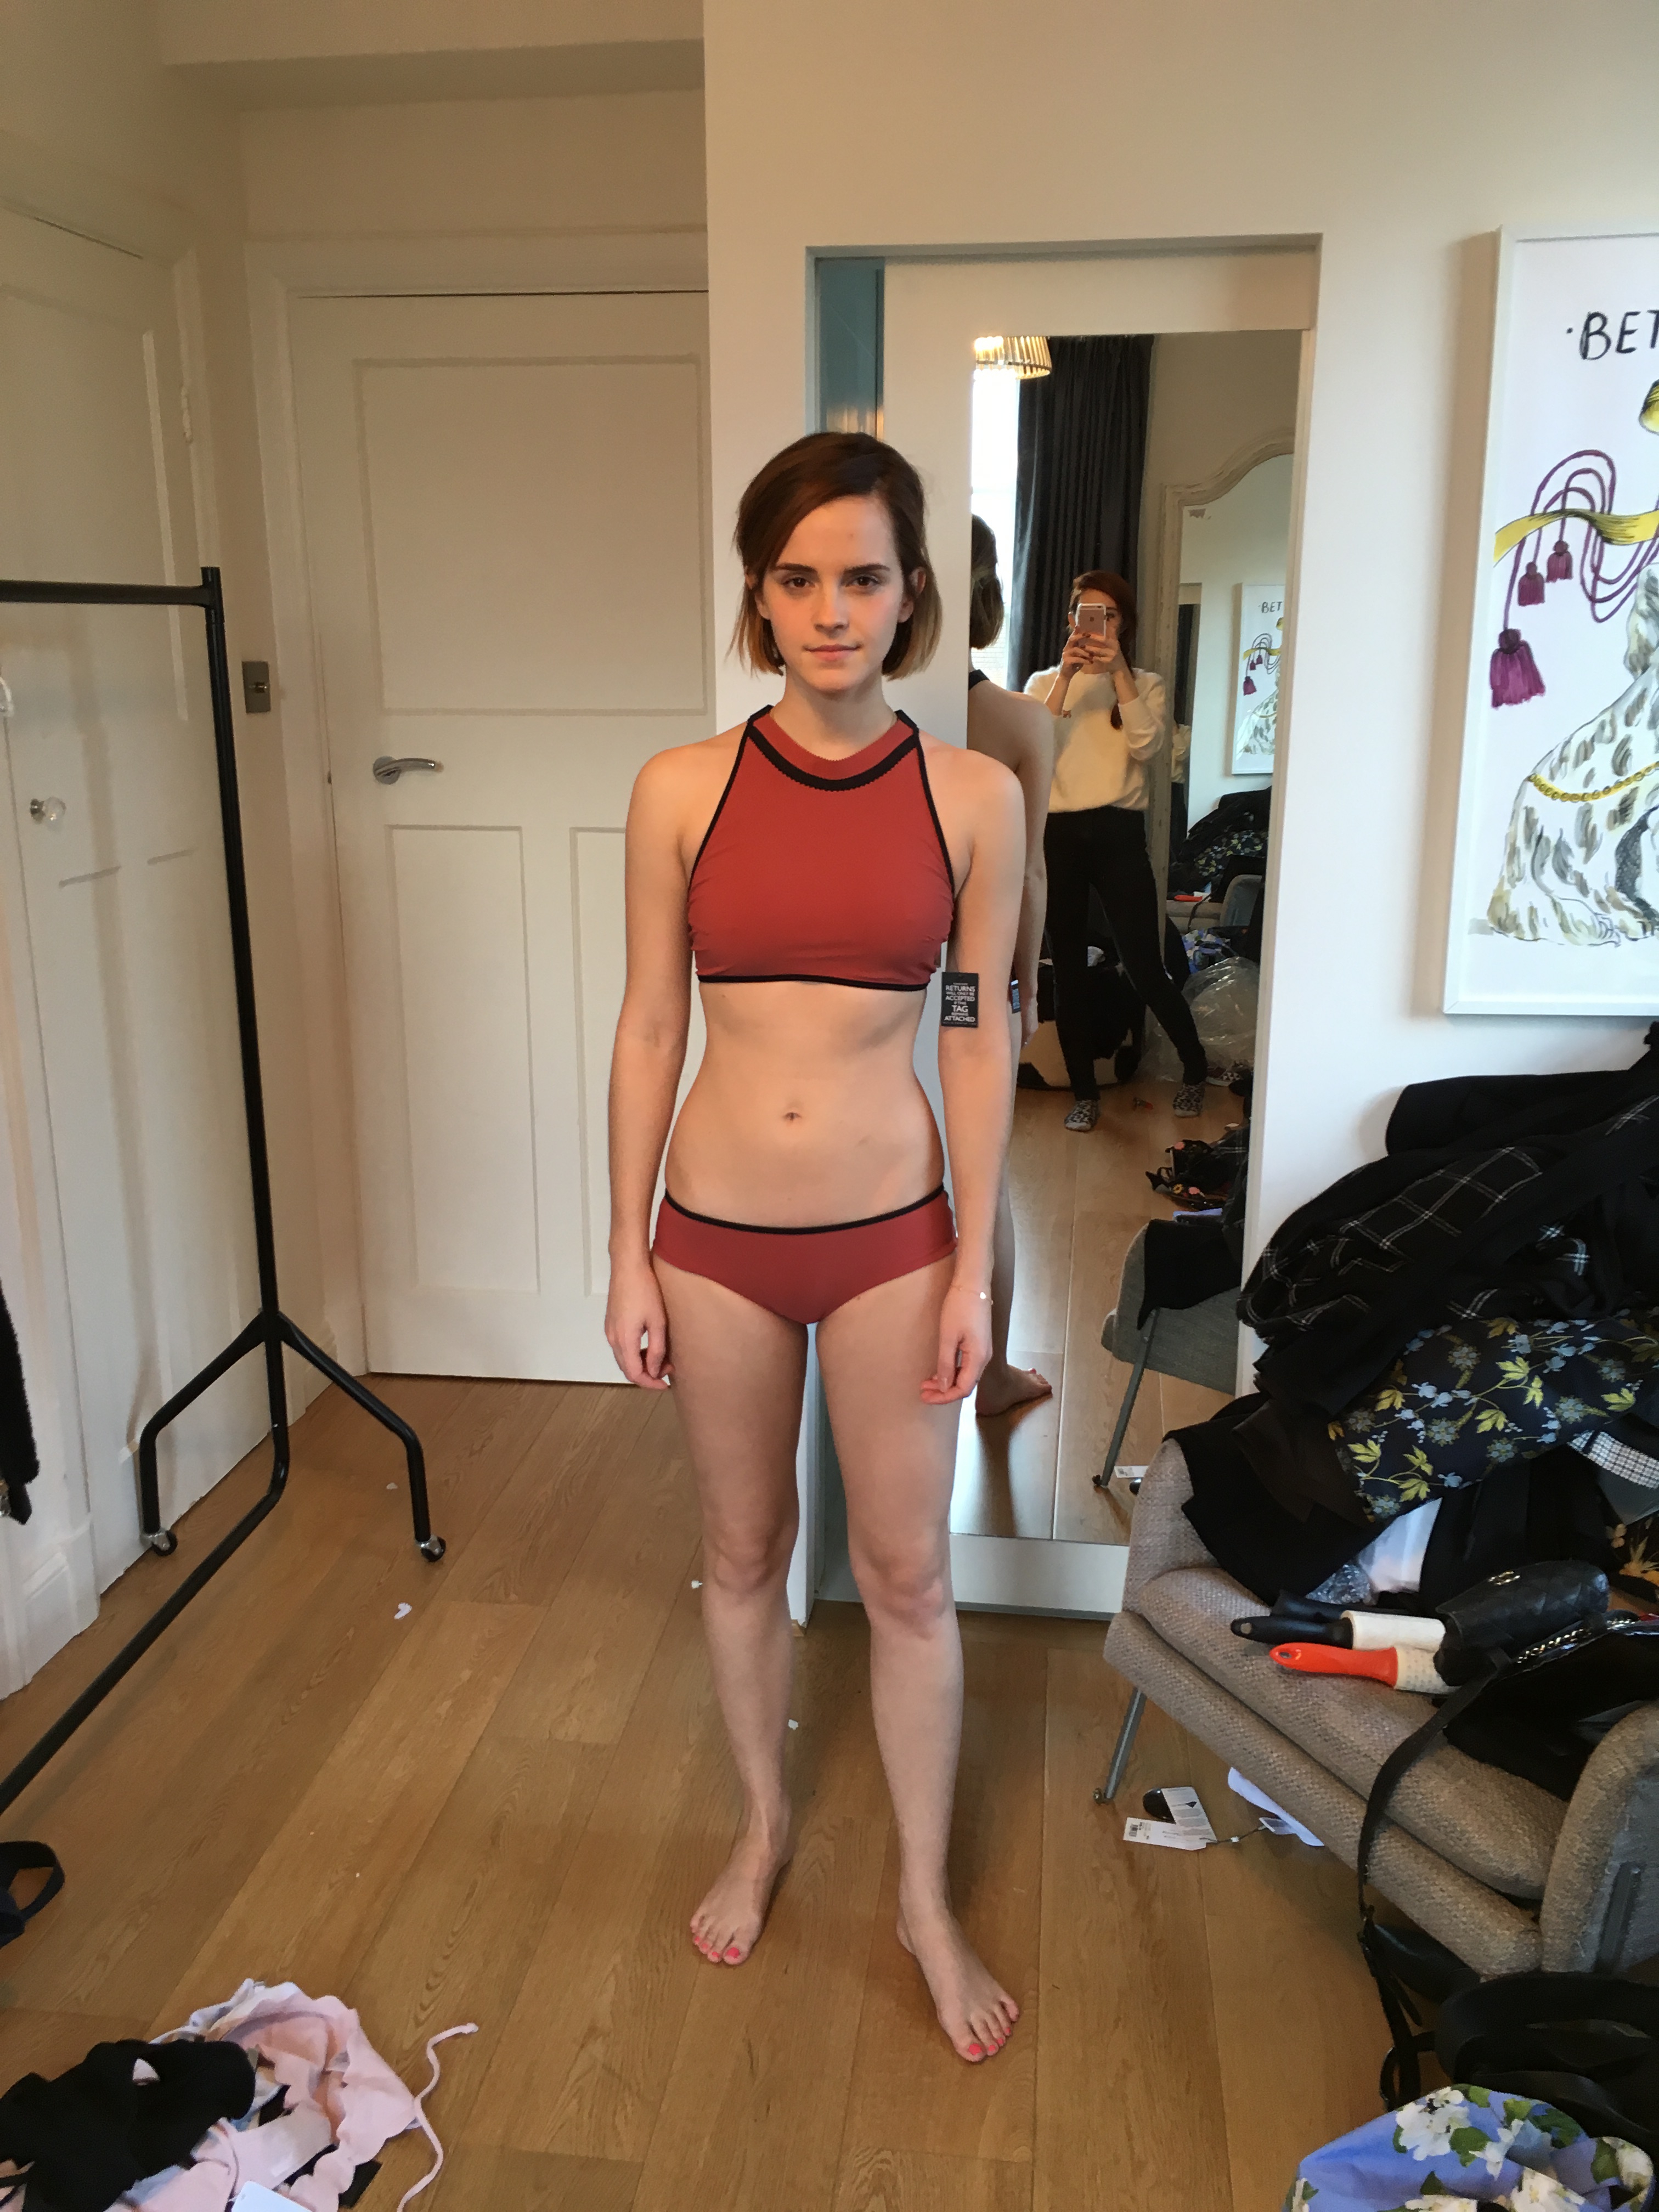 Emma Watson sexy leak